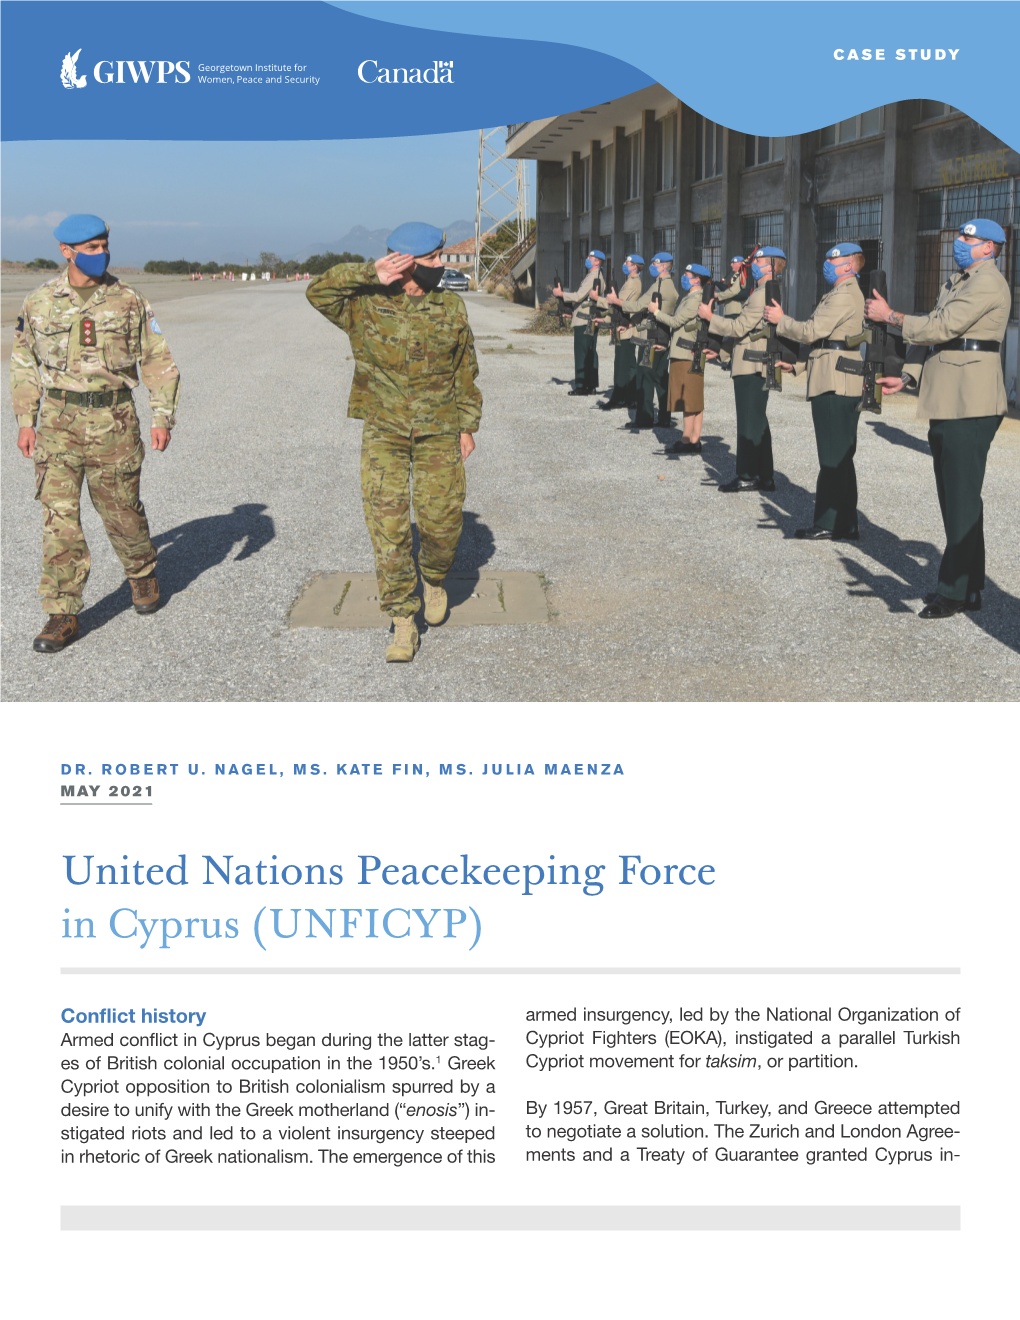 United Nations Peacekeeping Force in Cyprus (UNFICYP)